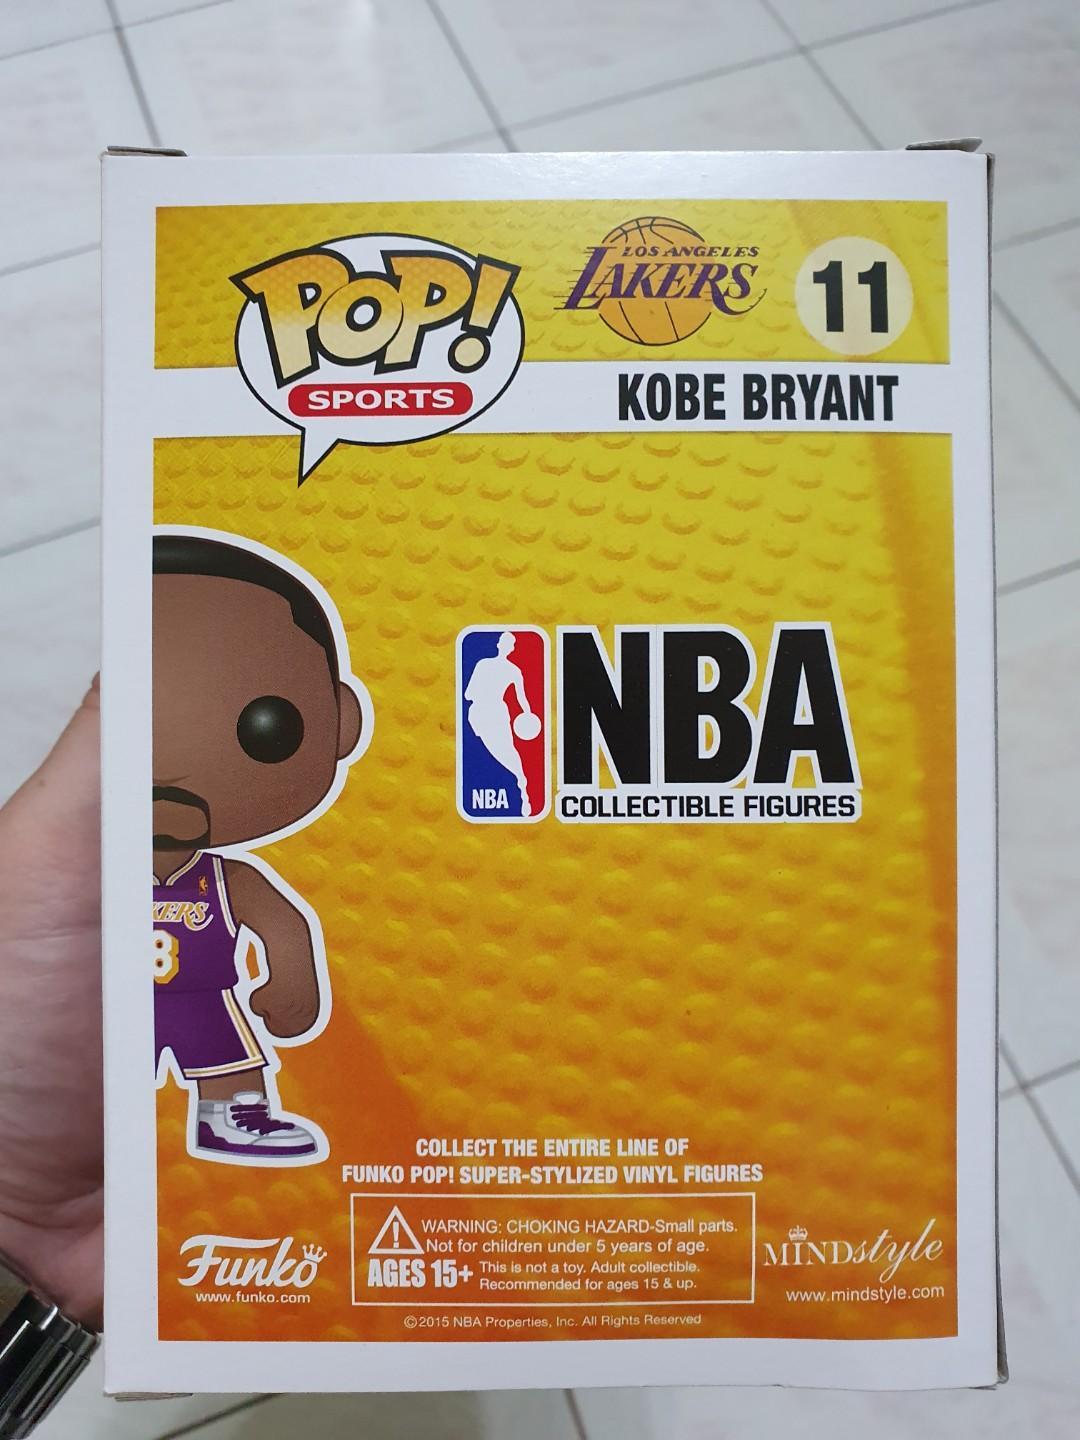 Funko Pop Kobe Bryant Error Box 2015 OG NBA, Hobbies & Toys, Toys & Games  on Carousell